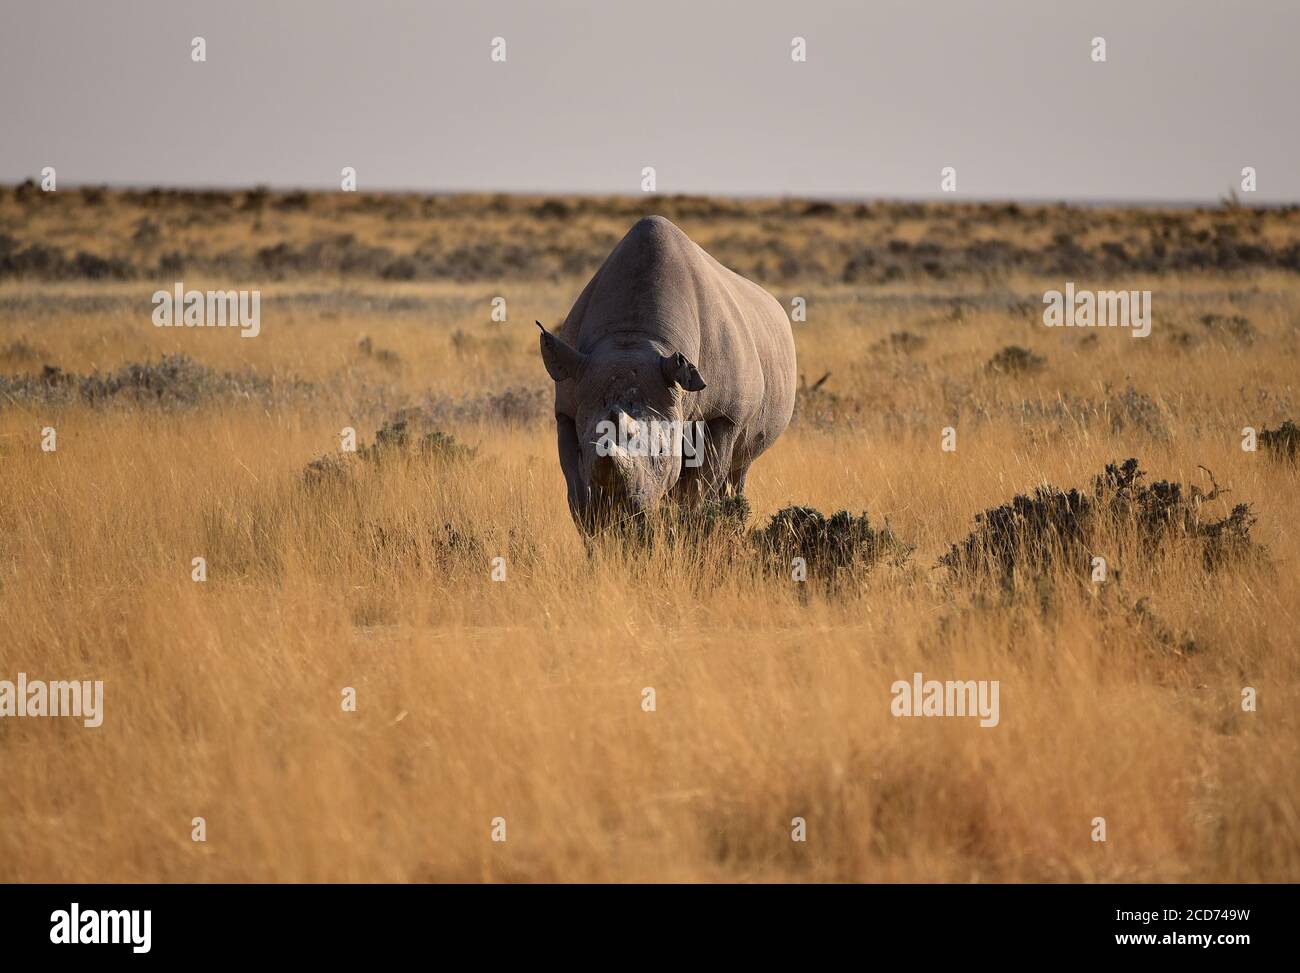 Vue de face des rhinocéros noirs ou des rhinocéros à lèvres accrochantées (Diceros bicornis) avec cornes coupées. Parc national d'Etosha, Namibie Banque D'Images